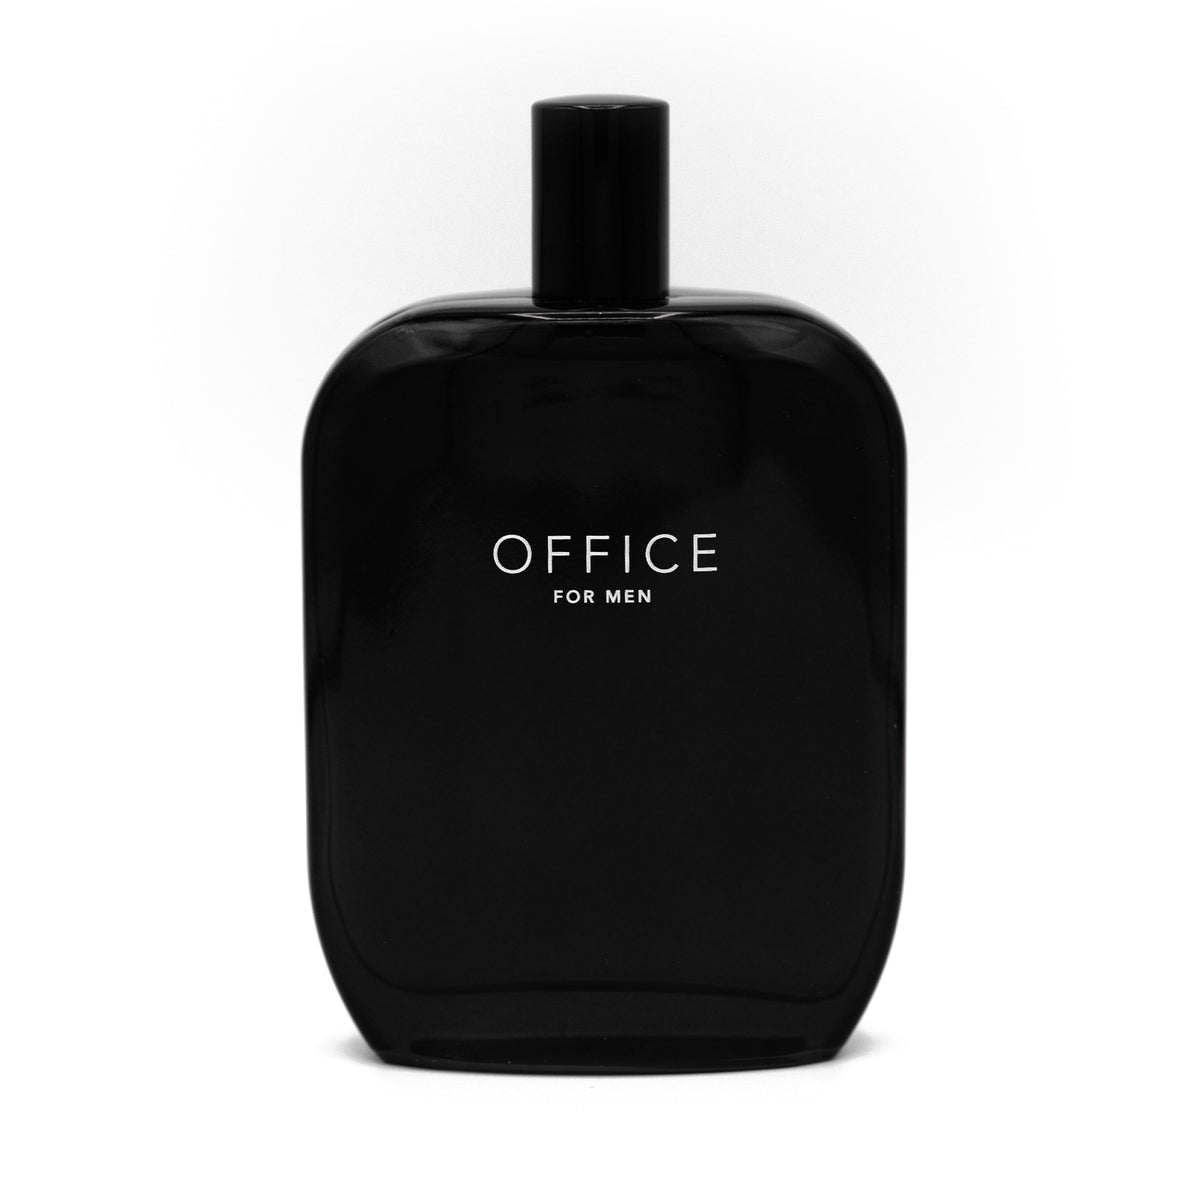 Fragrance One - OFFICE for Men